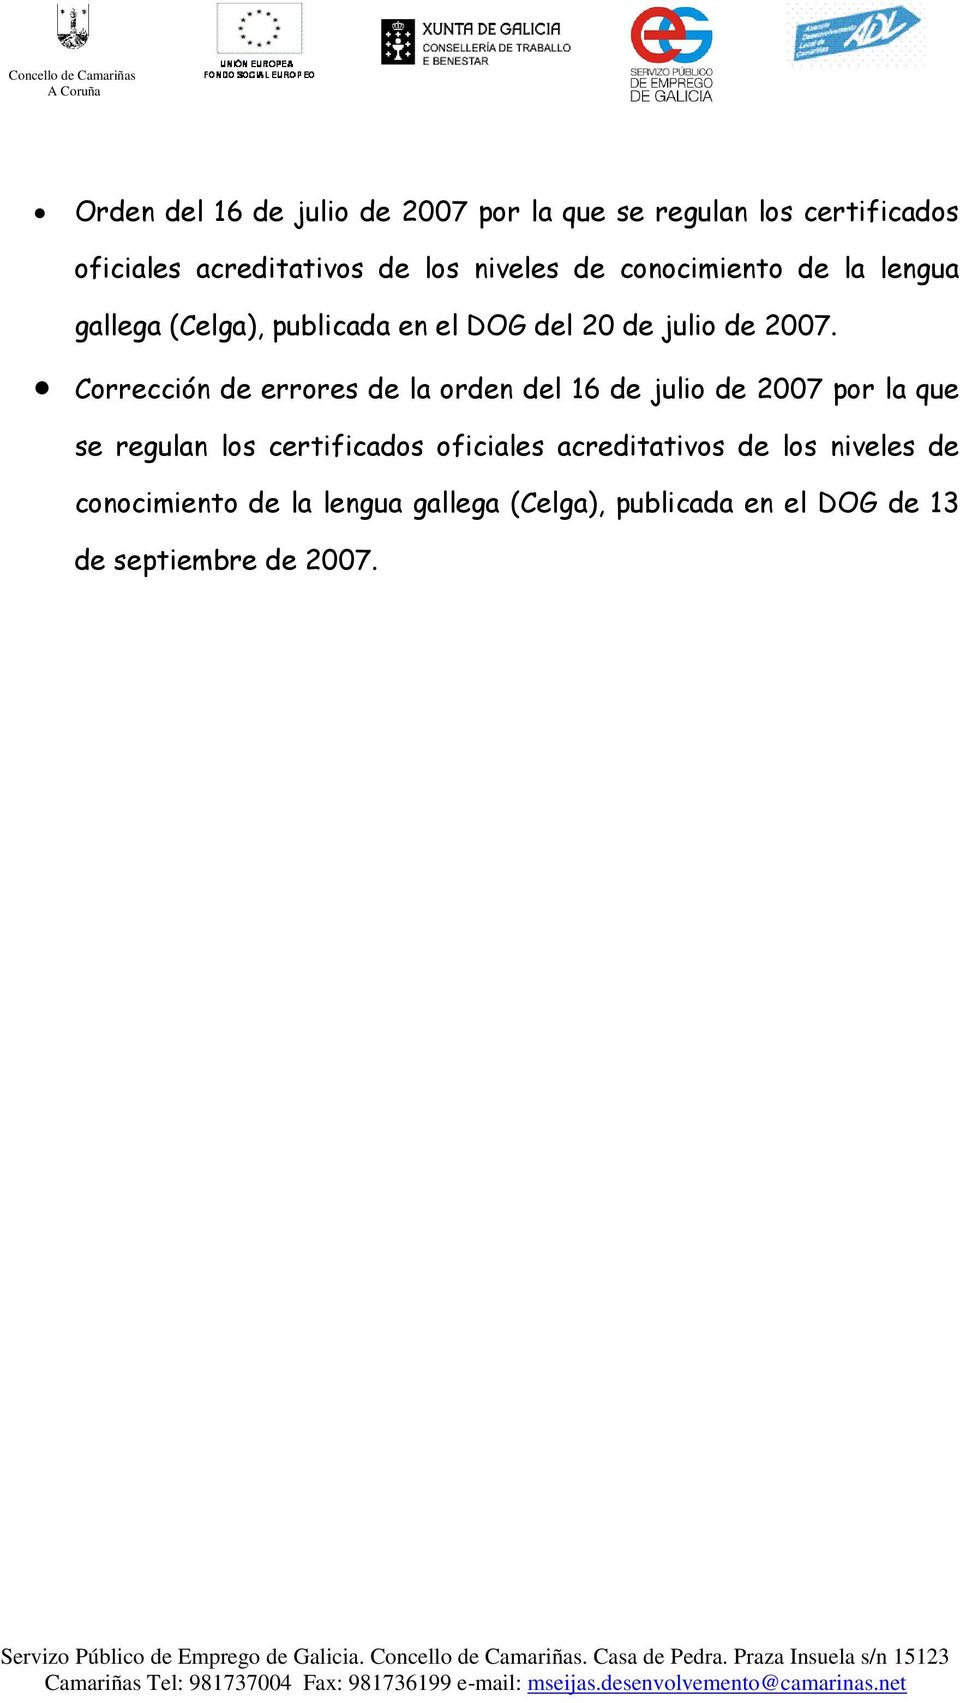 Corrección de errores de la orden del 16 de julio de 2007 por la que se regulan los certificados oficiales